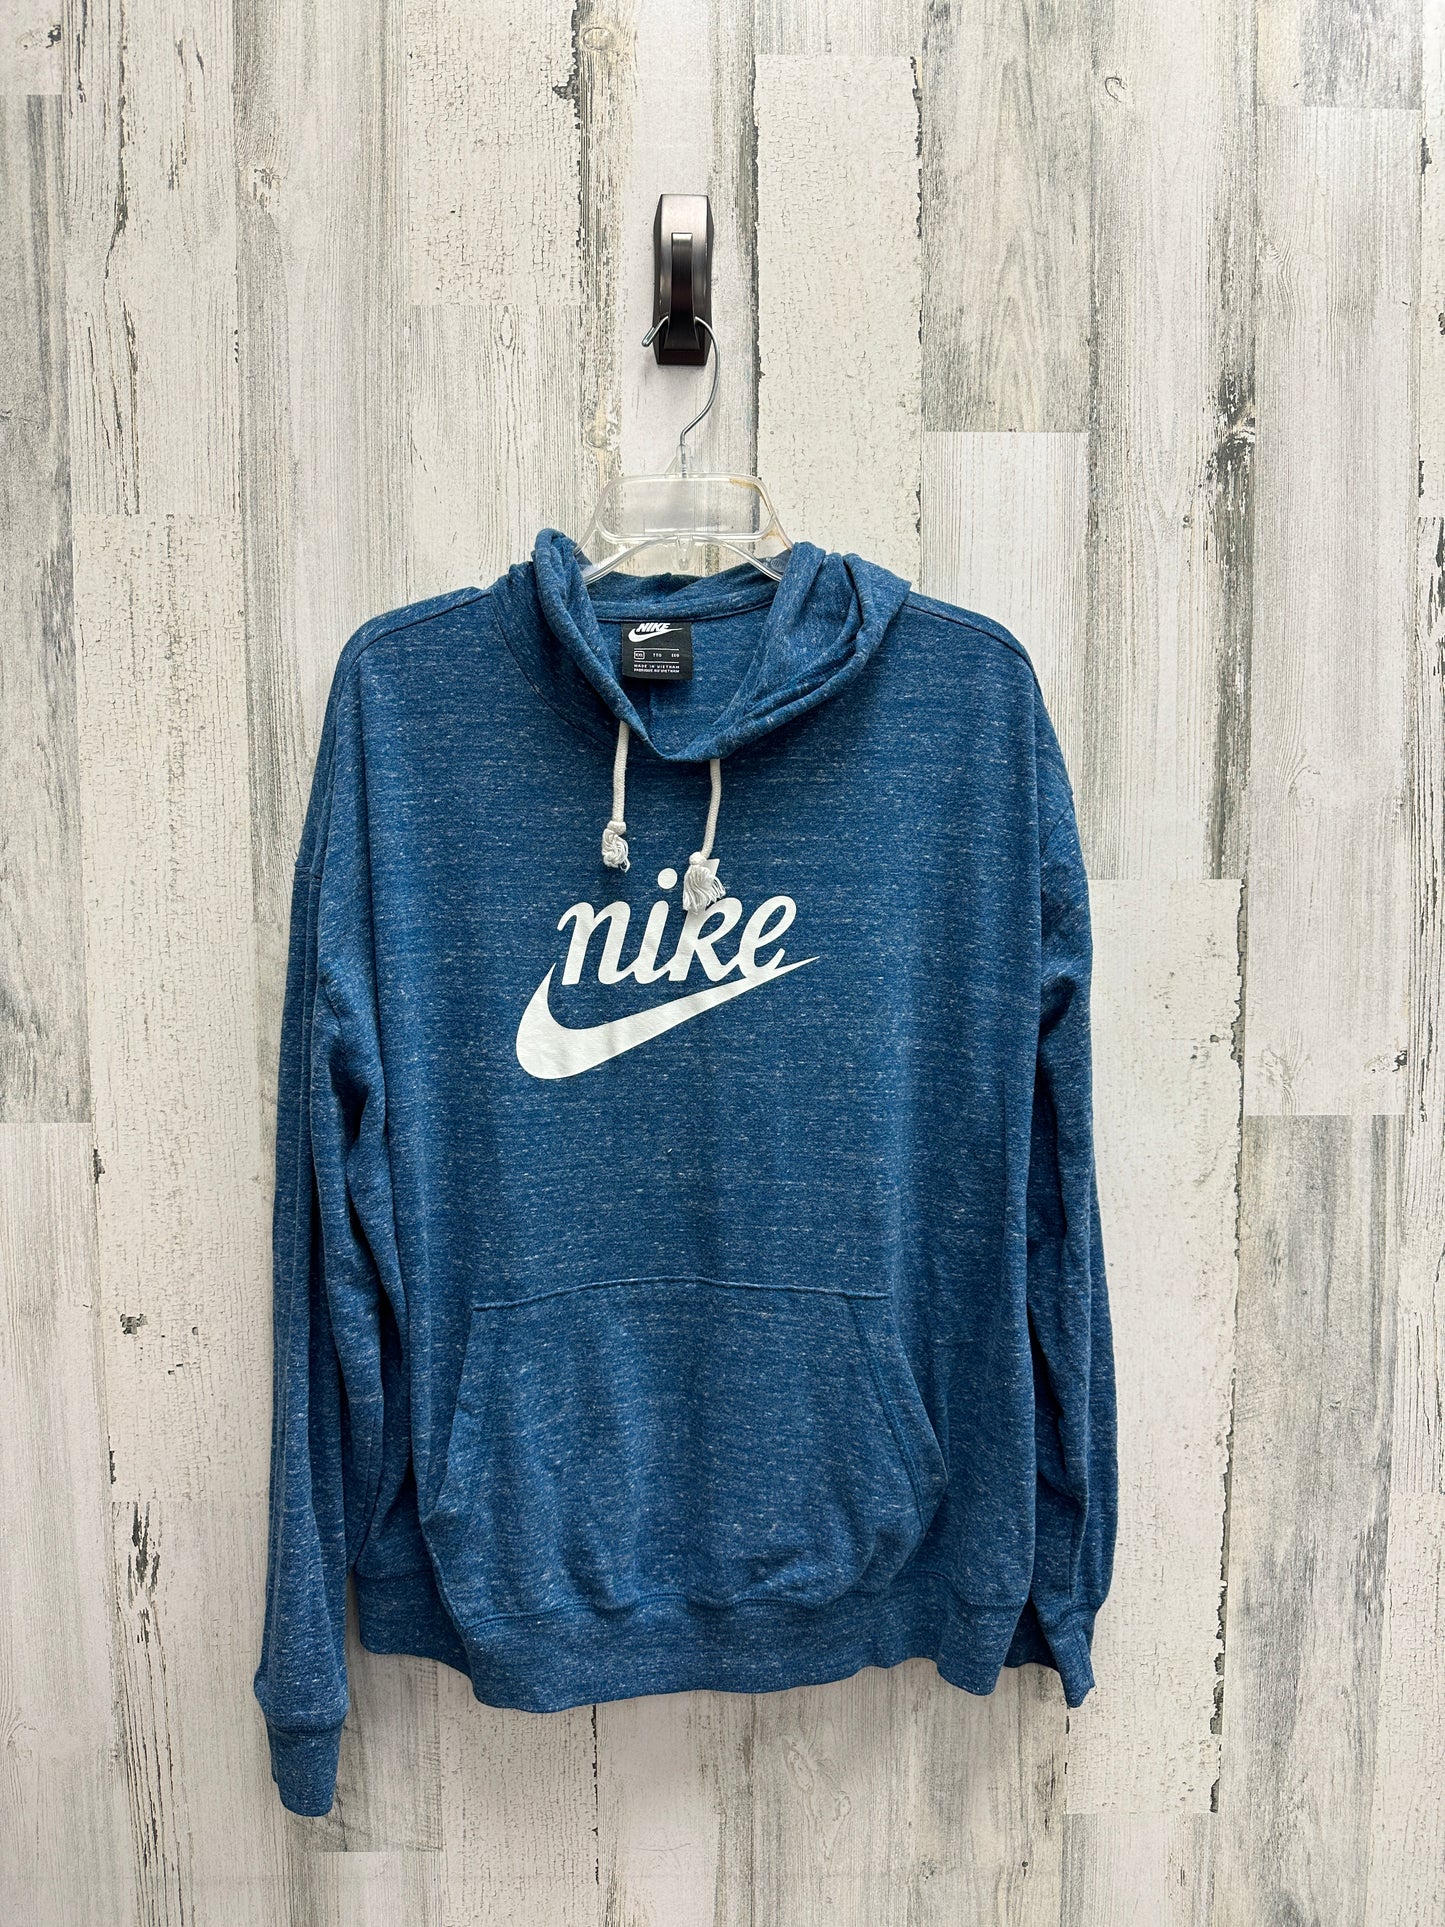 Sweatshirt Hoodie By Nike Apparel  Size: 2x